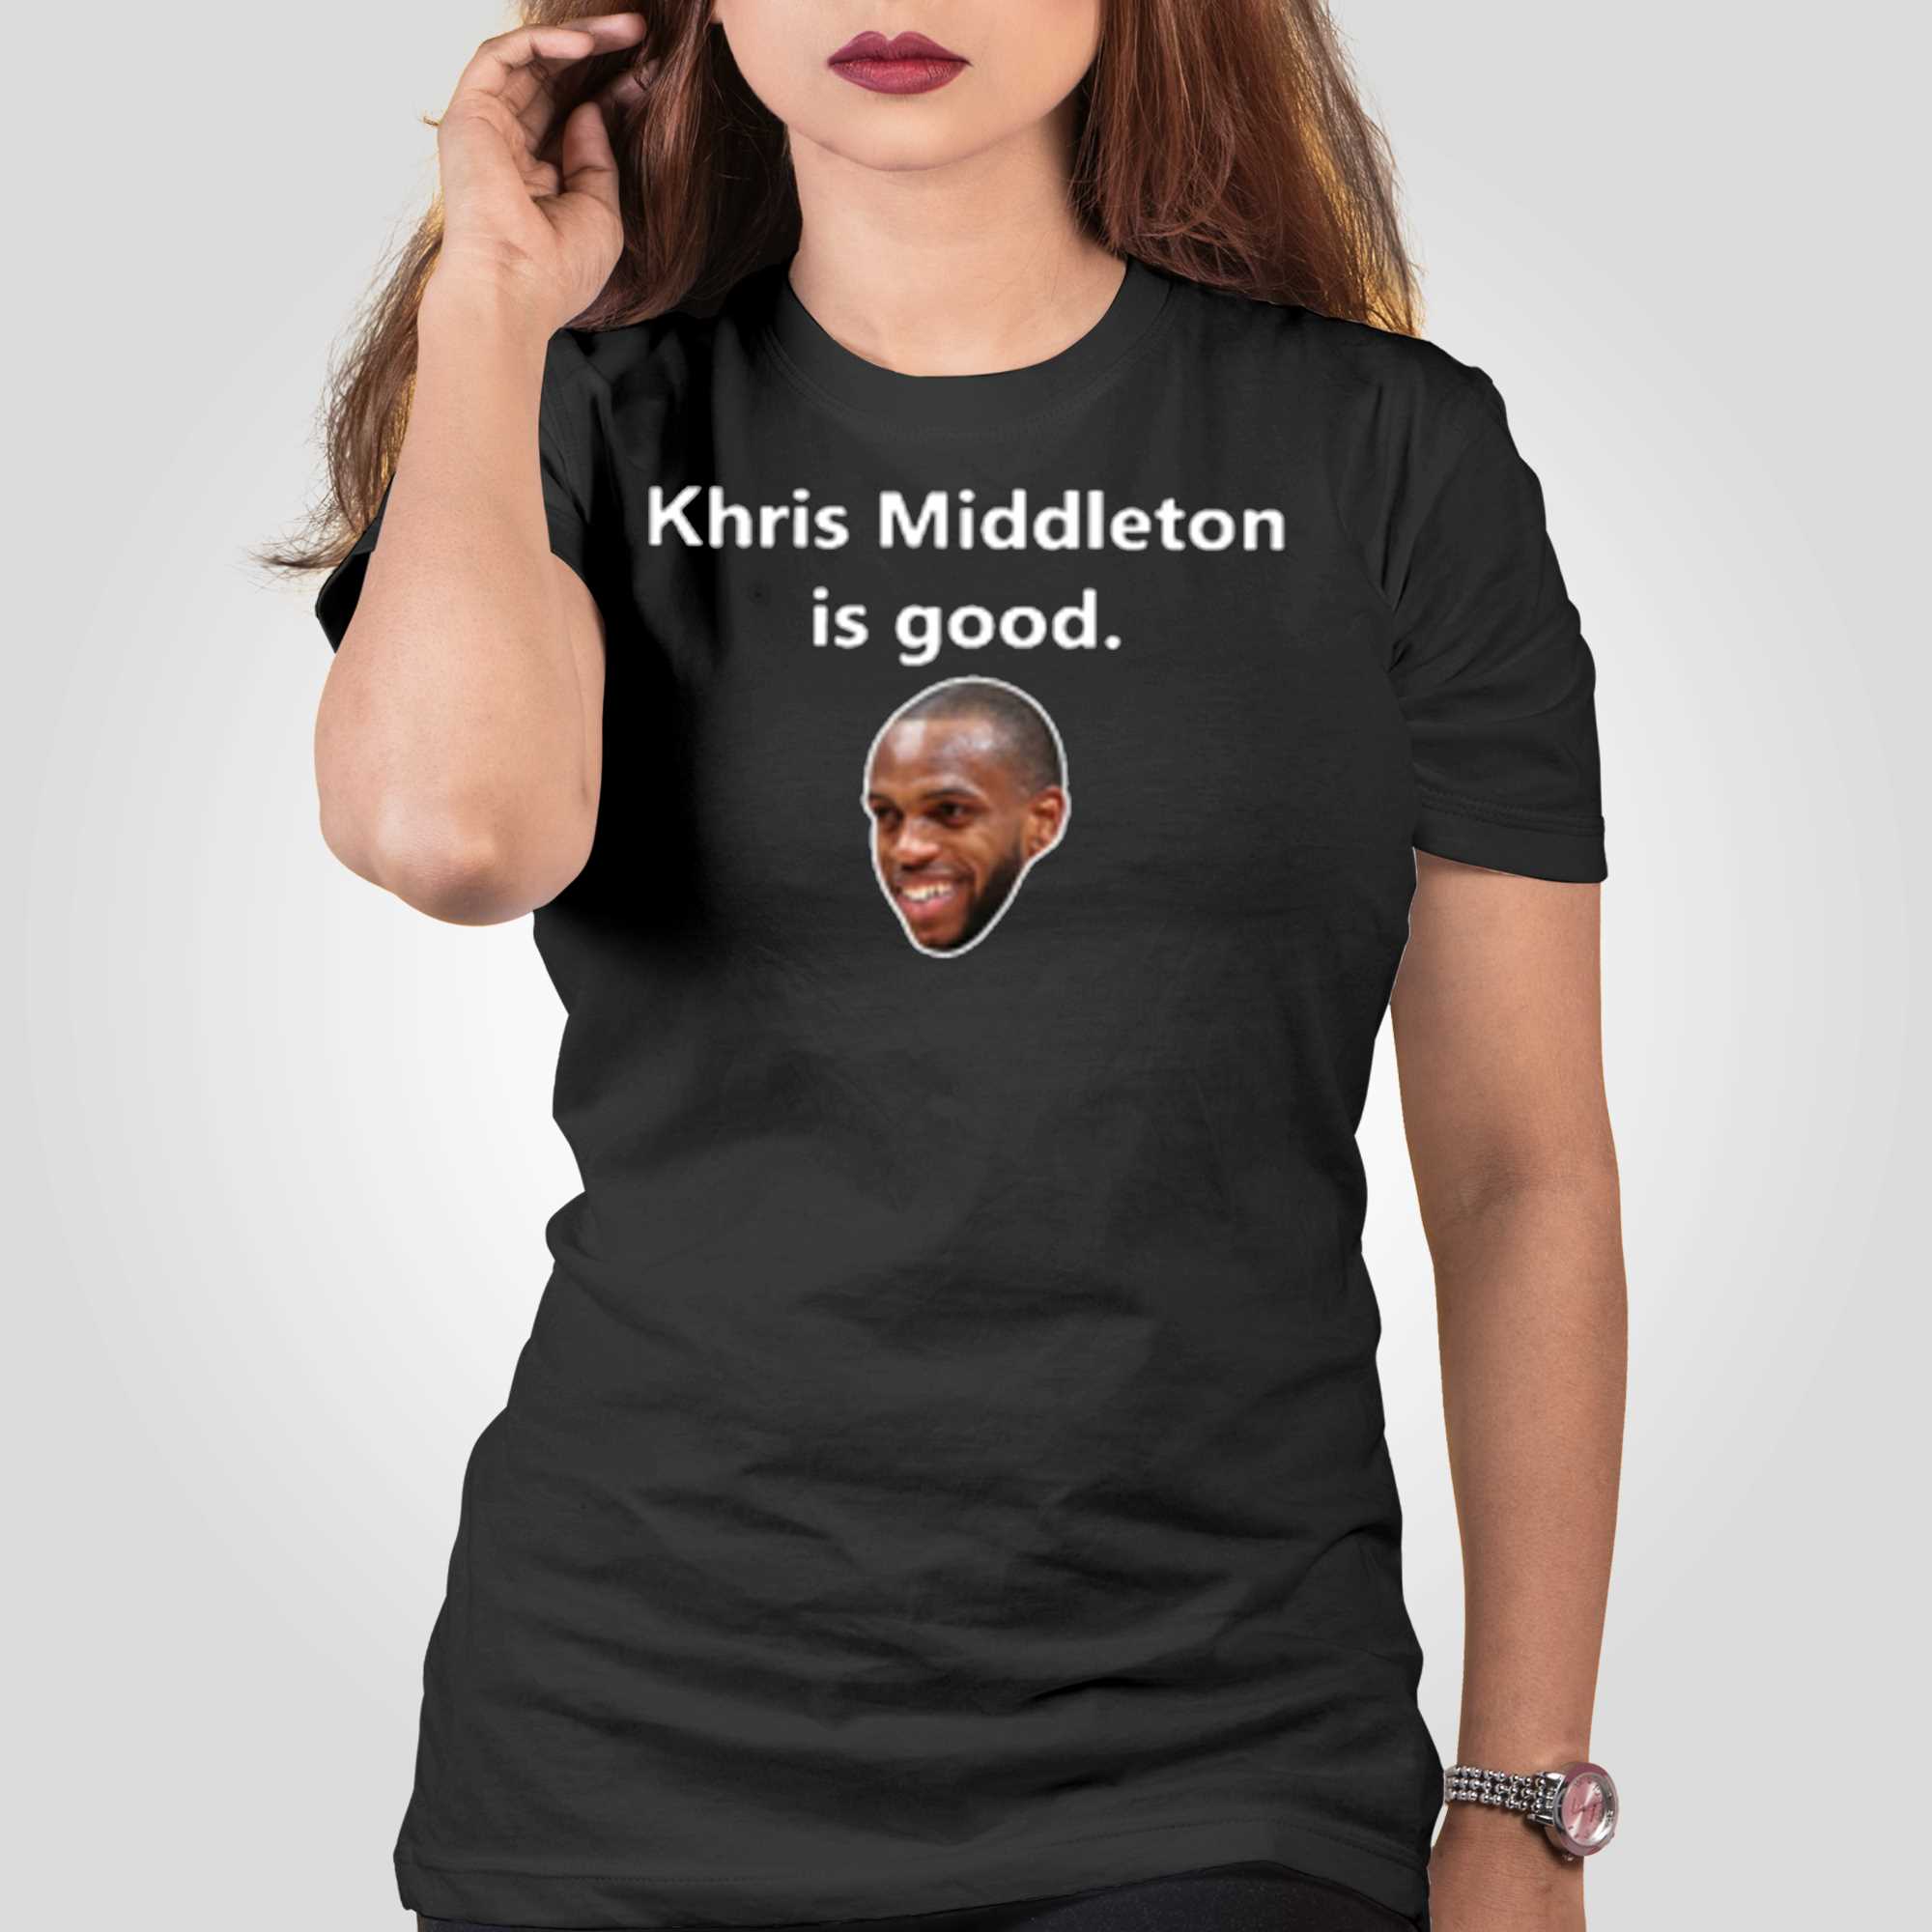 Khris Middleton Jersey, Khris Middleton Shirts, Apparel